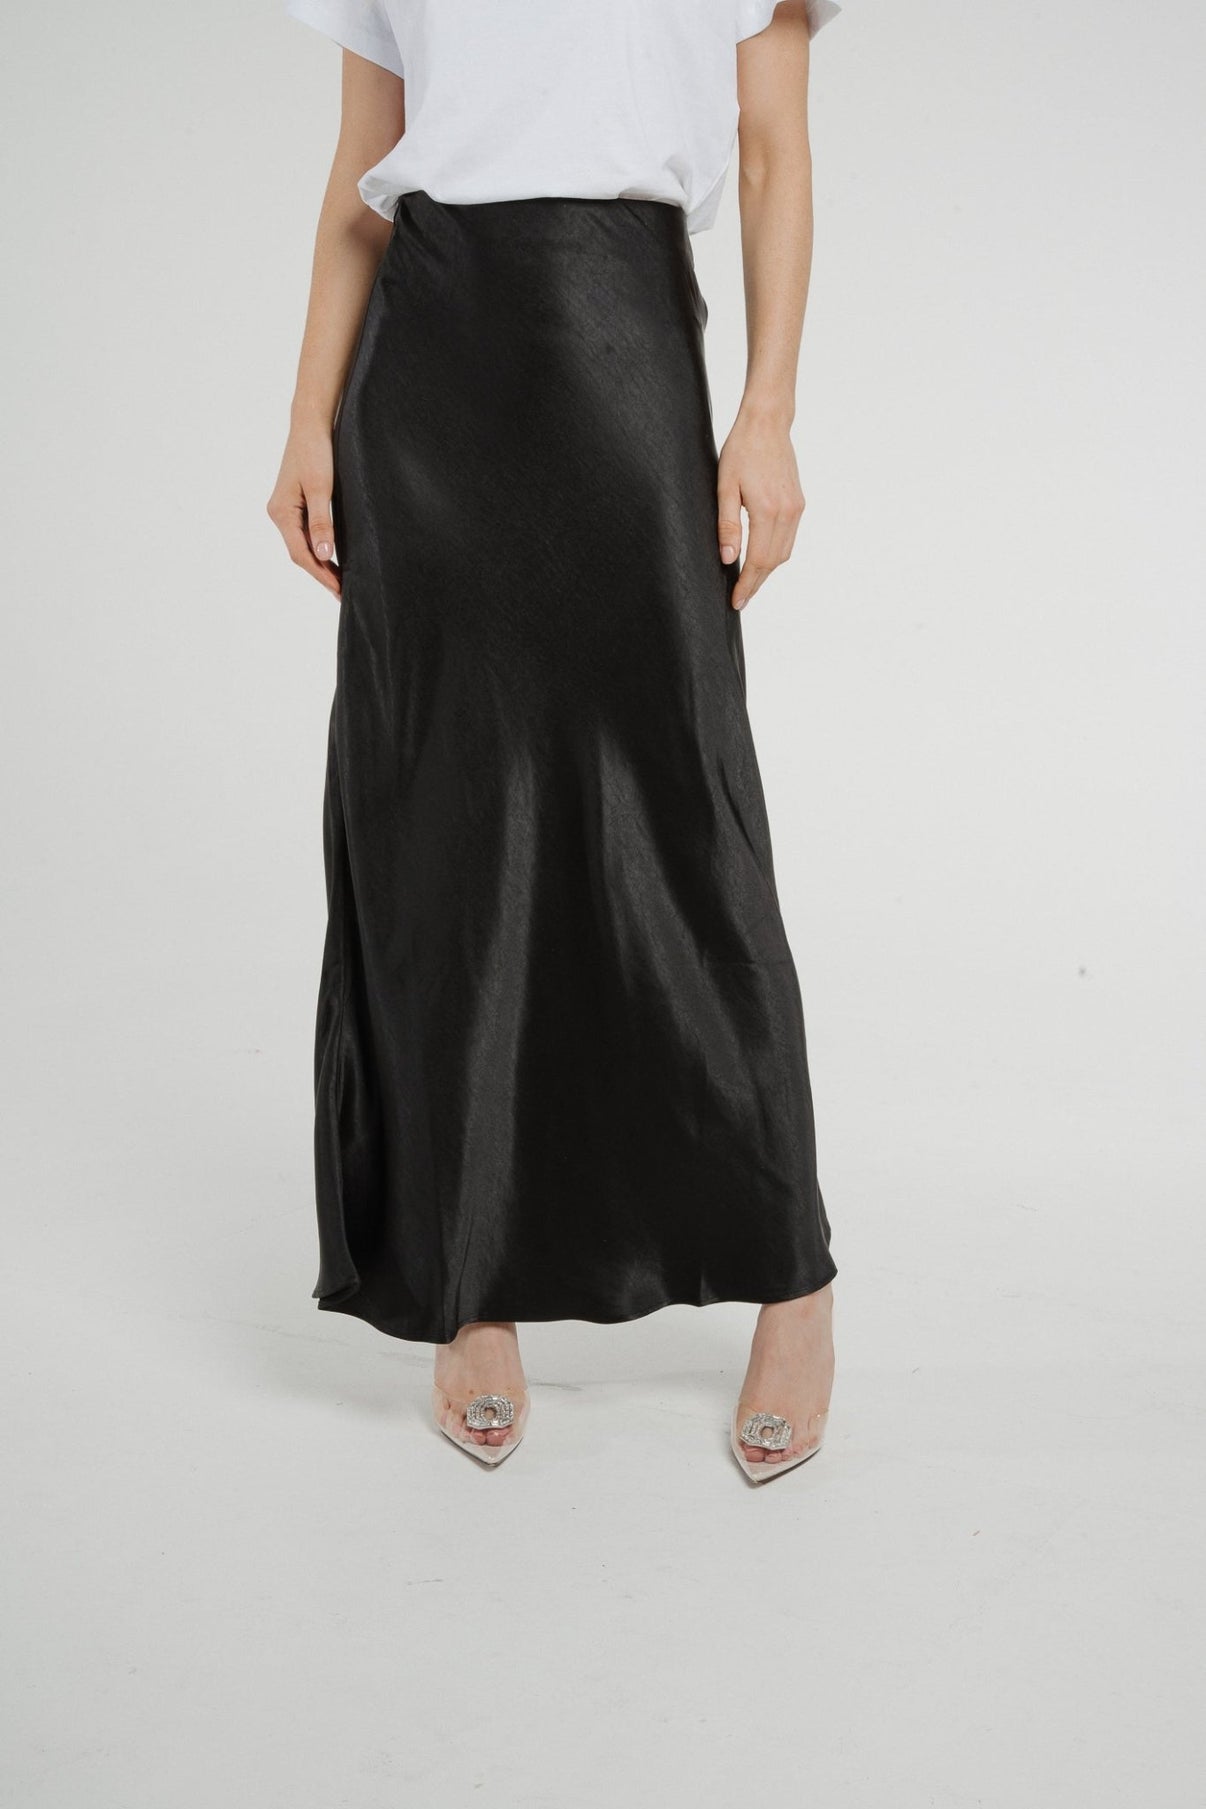 Jane Longline Satin Skirt In Black – The Walk in Wardrobe